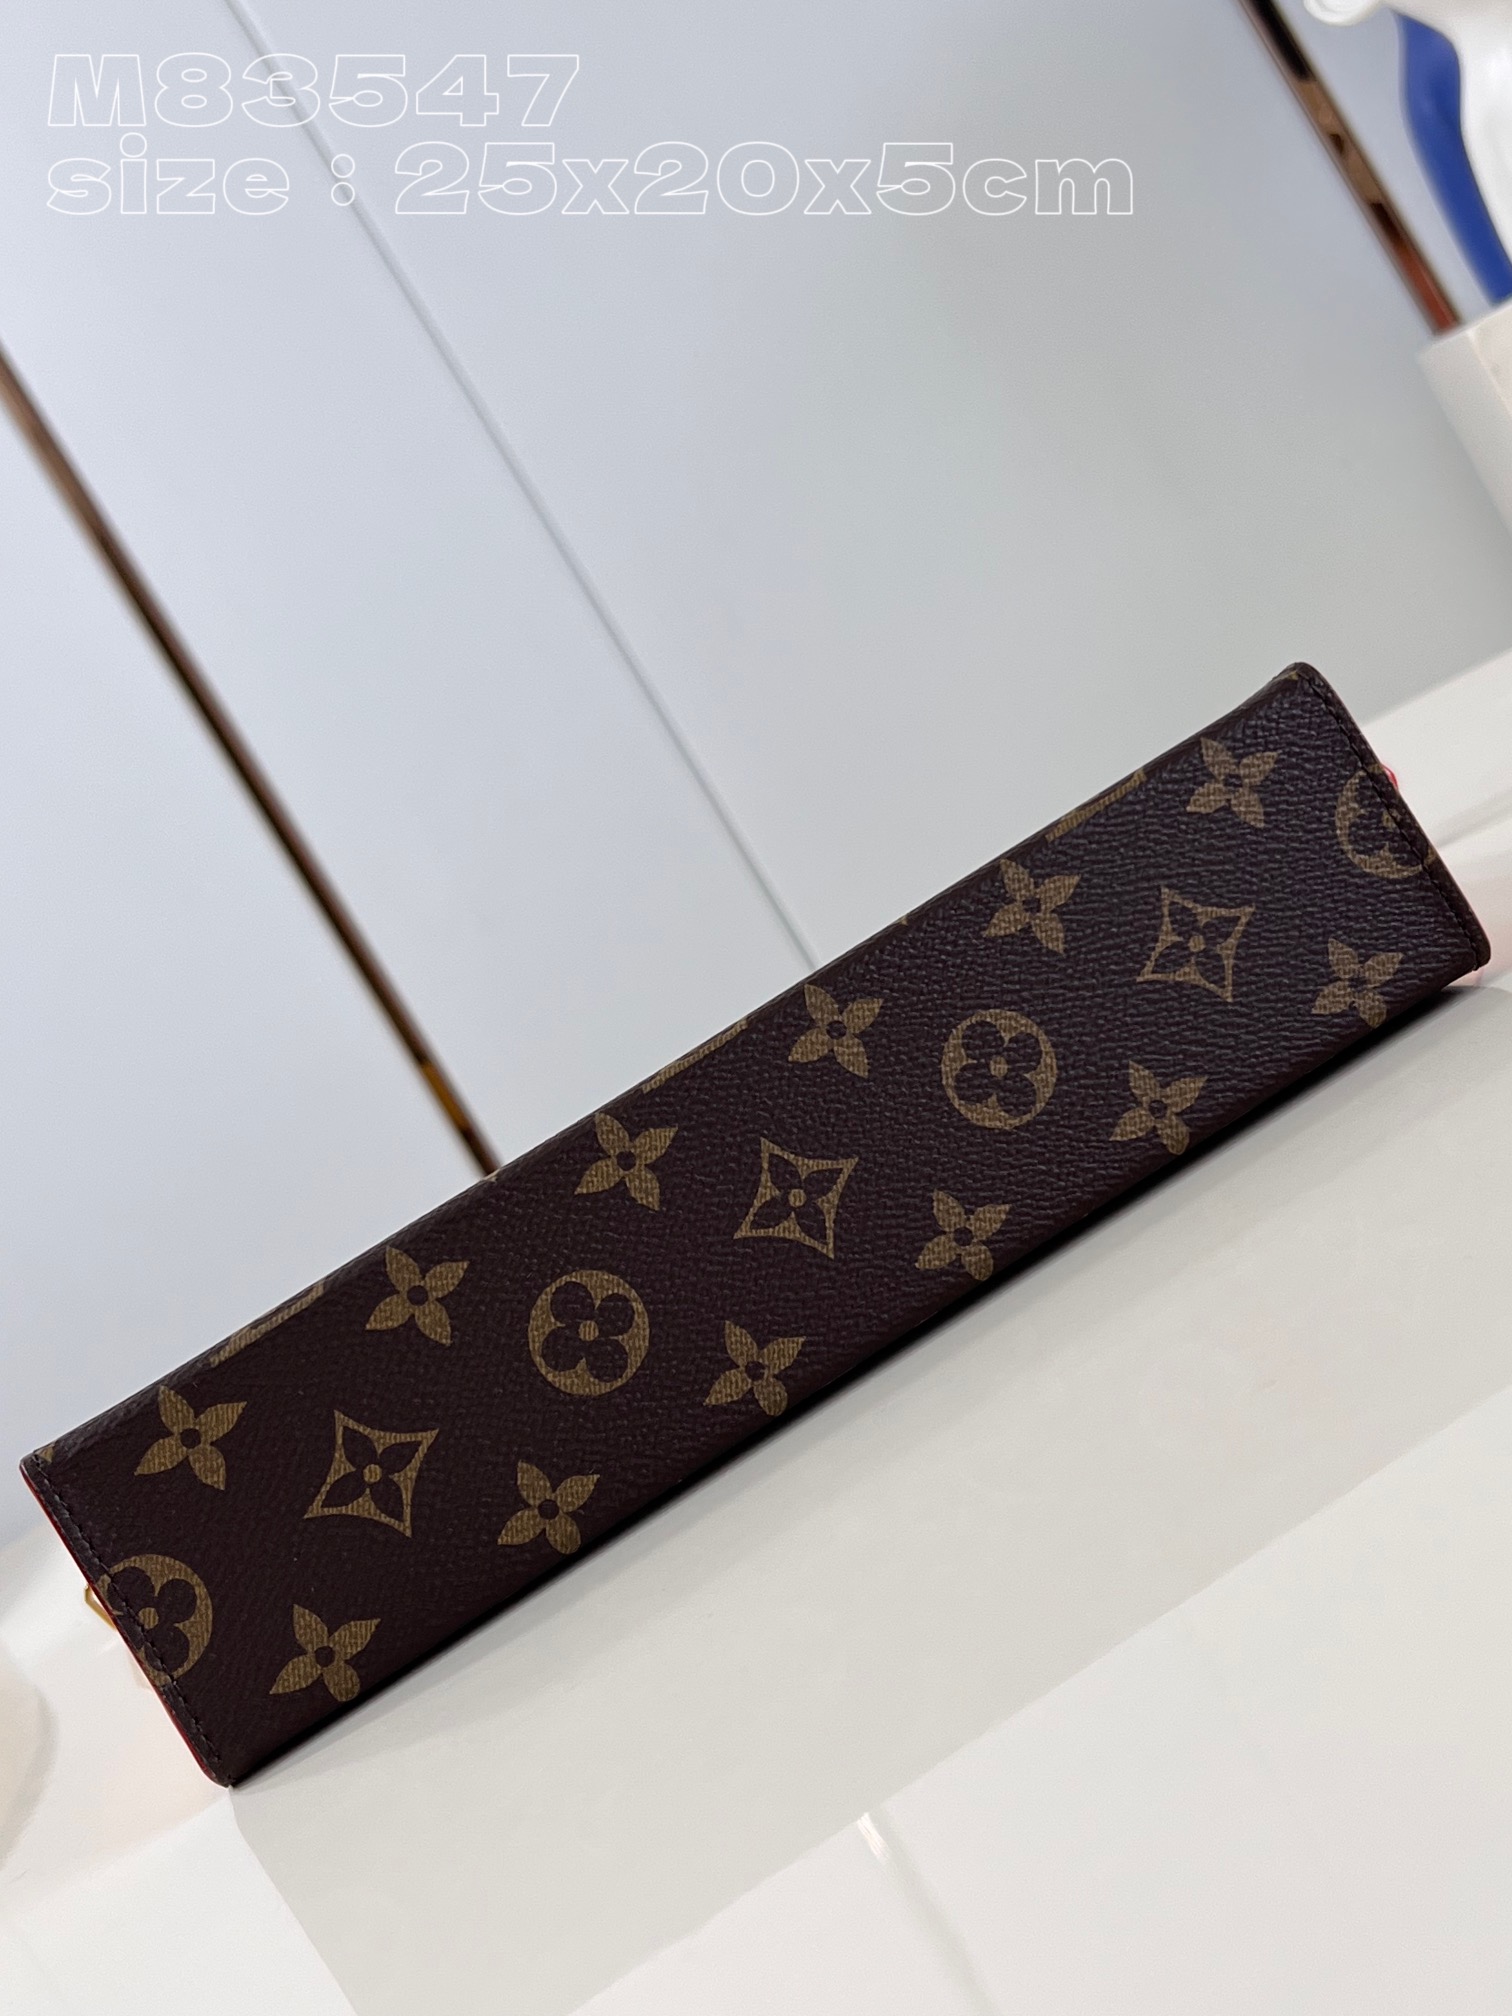 顶级原单M83547PocheToilette盥洗袋取材路易威登经典Monogram帆布和细腻牛皮革搭配